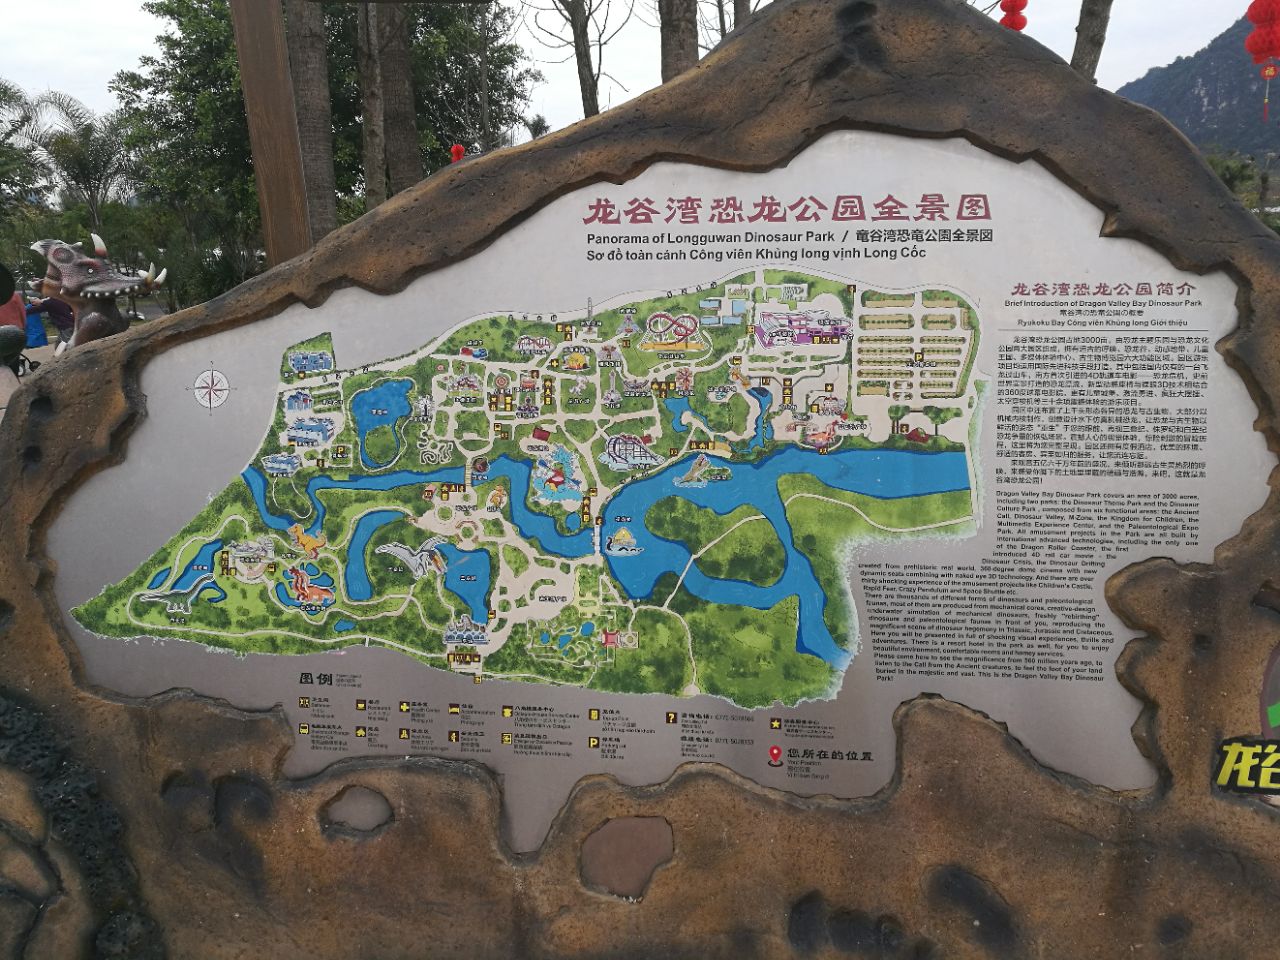 【携程攻略】扶绥龙谷湾恐龙公园景点,好玩,门票包含